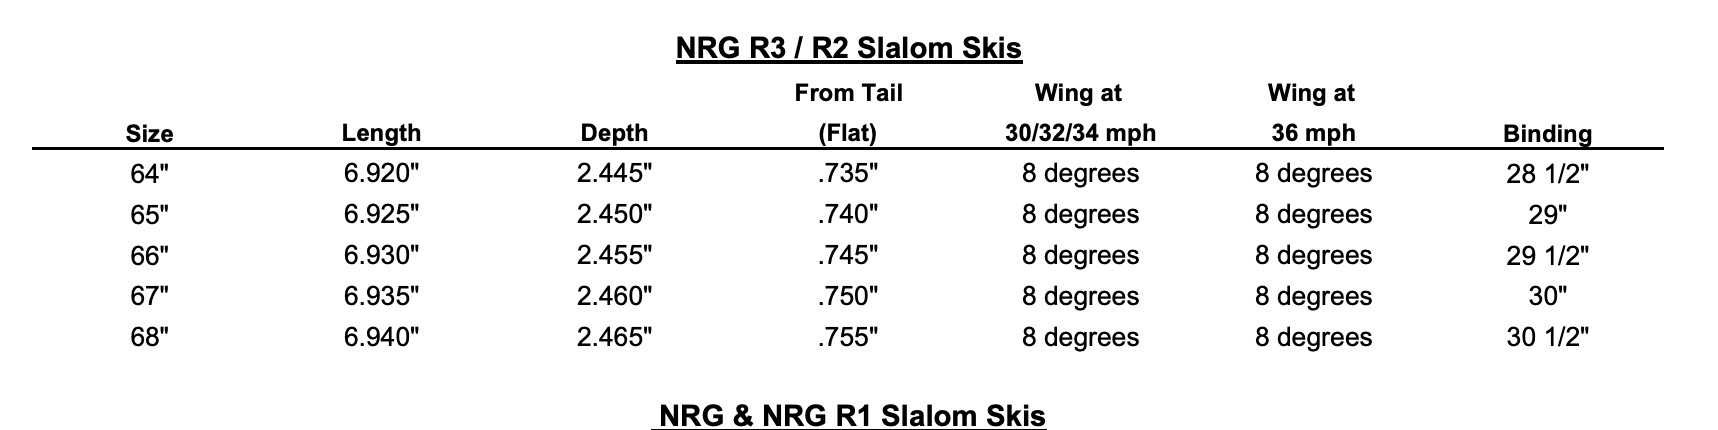 D3 NRG R3 Slalom Ski